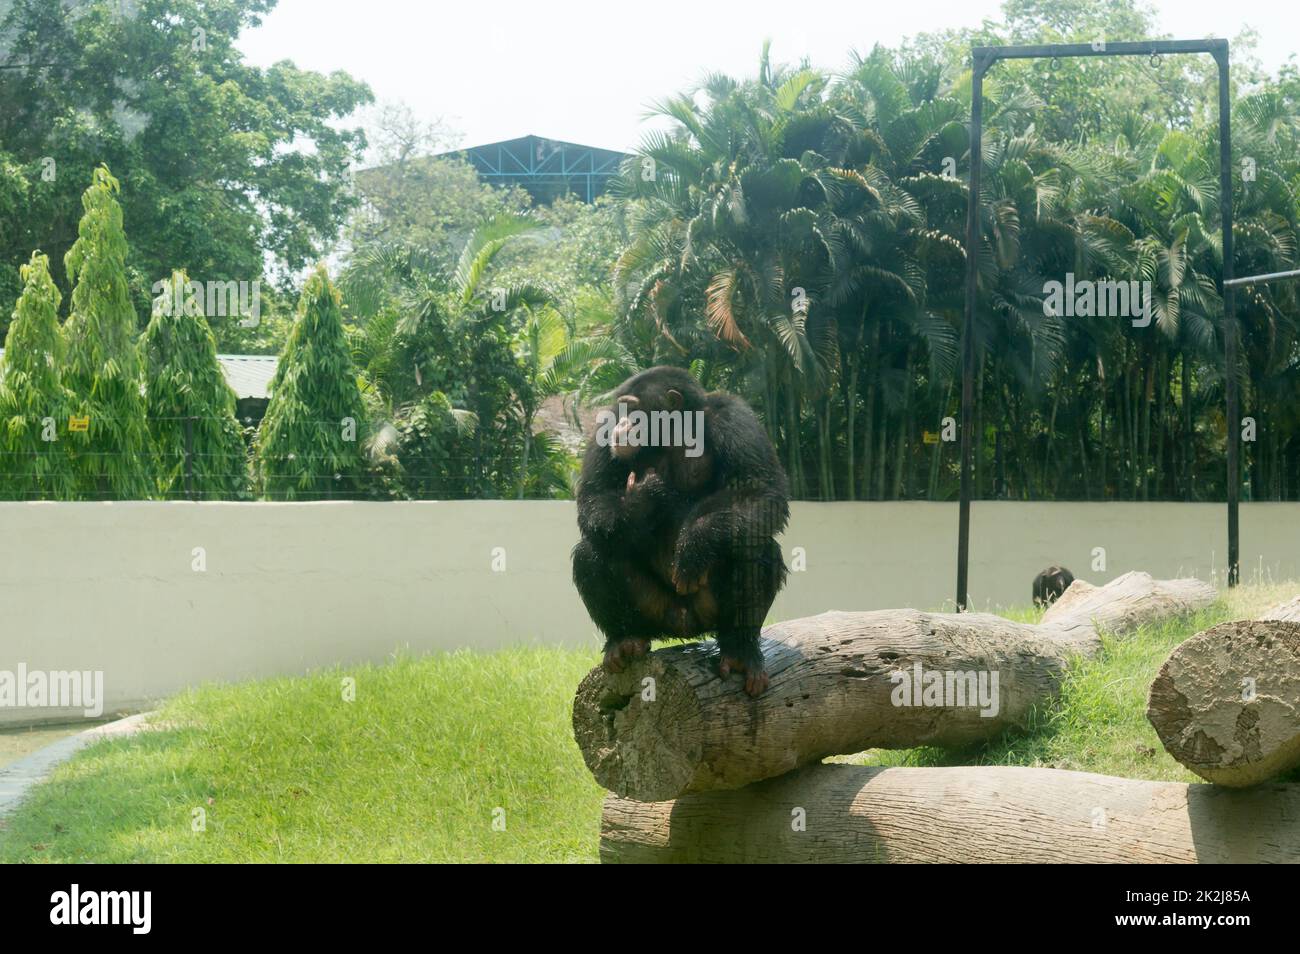 Le chimpanzé sauvage (Pan troglodytes) le chimpanzé de Babu, espèce en voie de disparition de grands singes assis sur un tronc d'arbre au jardin zoologique d'Alipur, Kolkata, Bengale occidental, Inde Asie du Sud Banque D'Images